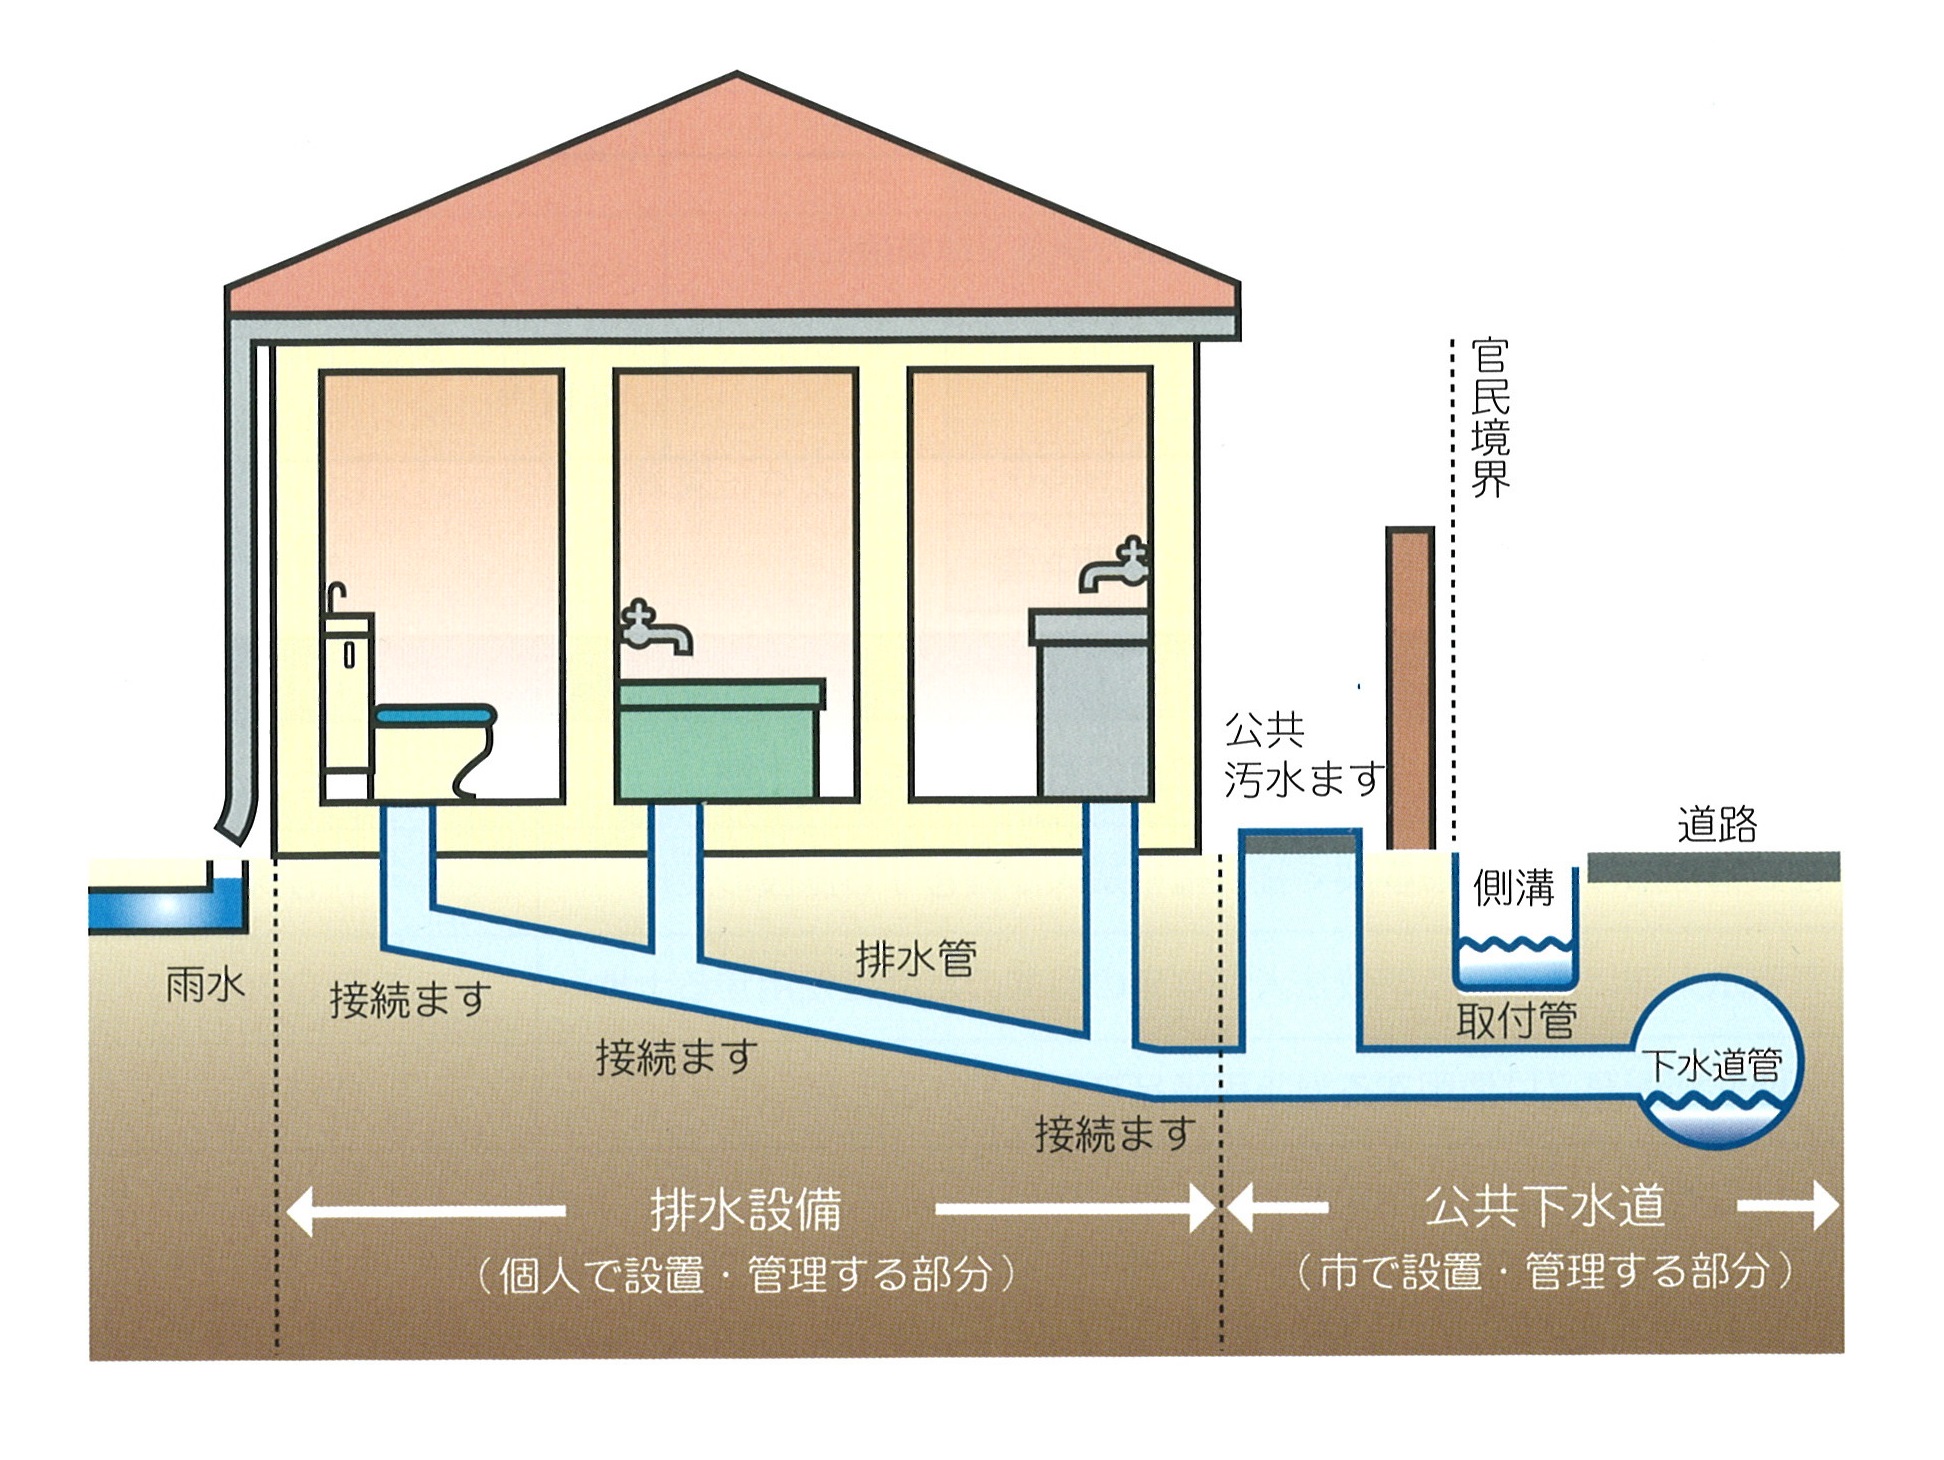 排水設備工事区分の概要説明の画像